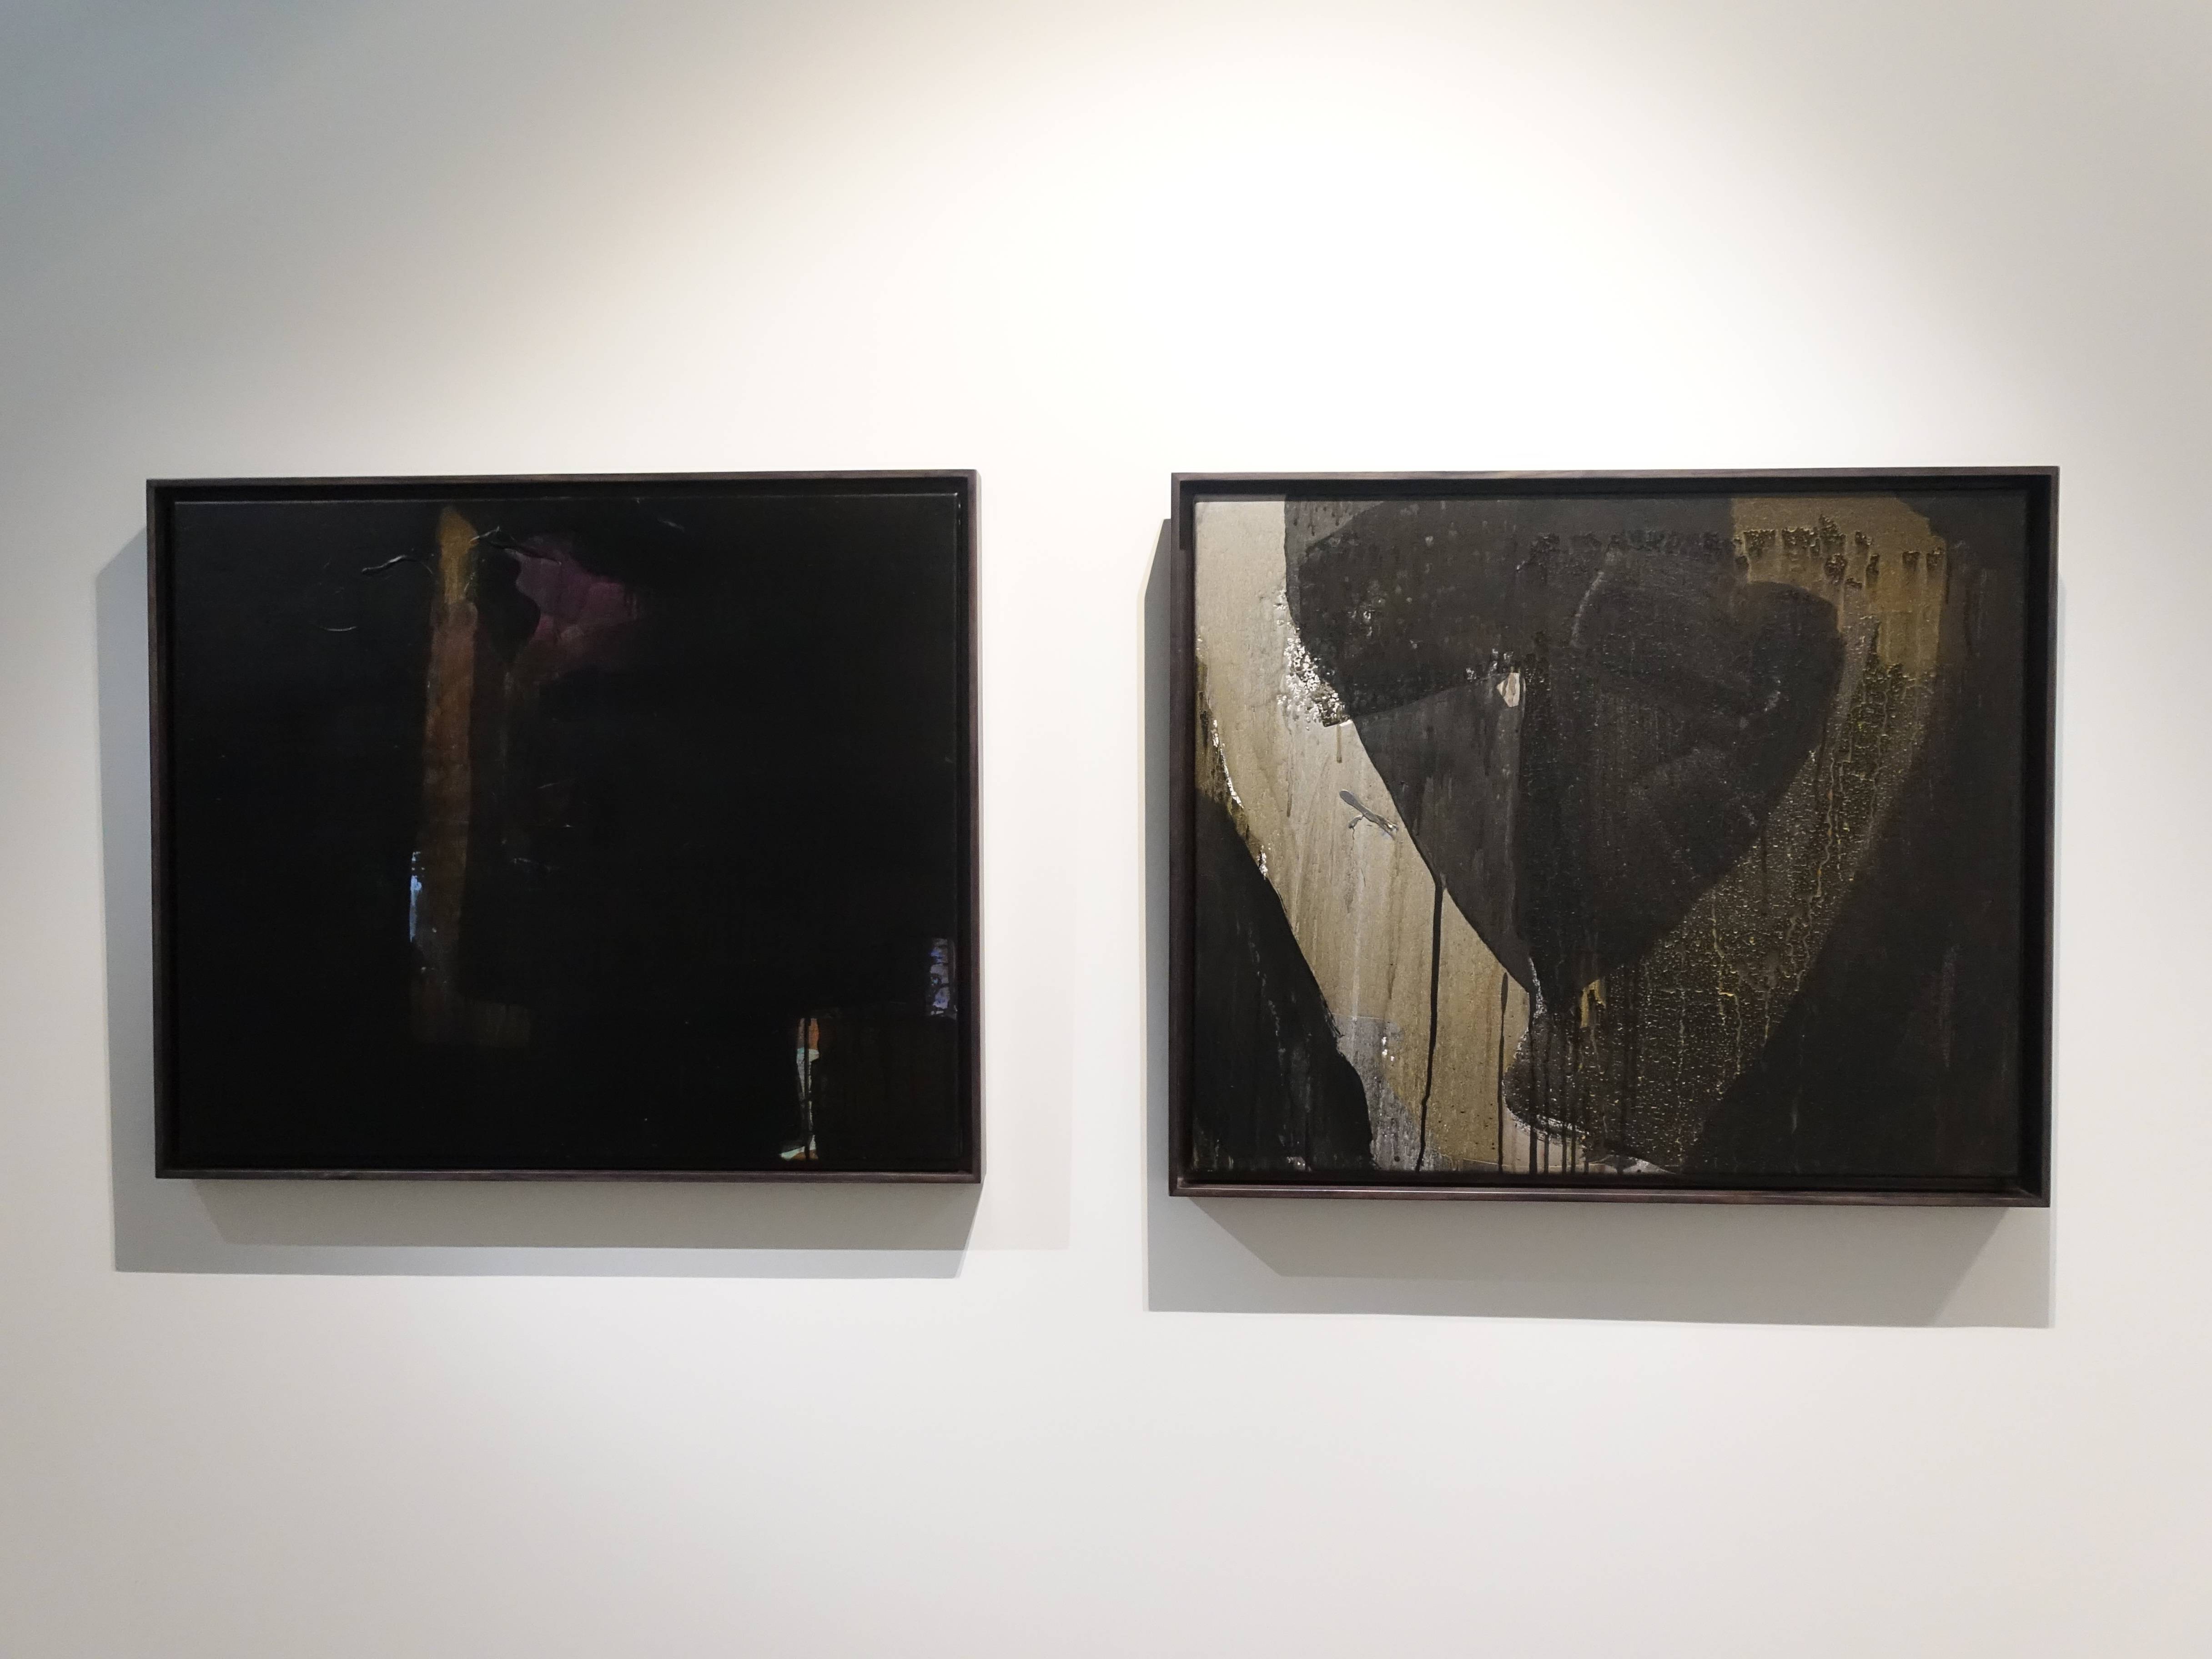 林鴻文，《走著走著》，61 x 72 cm，壓克力顏料、畫布，2017(左)。林鴻文，《轉影》，61 x 72 cm，壓克力顏料、畫布，2018(右)。